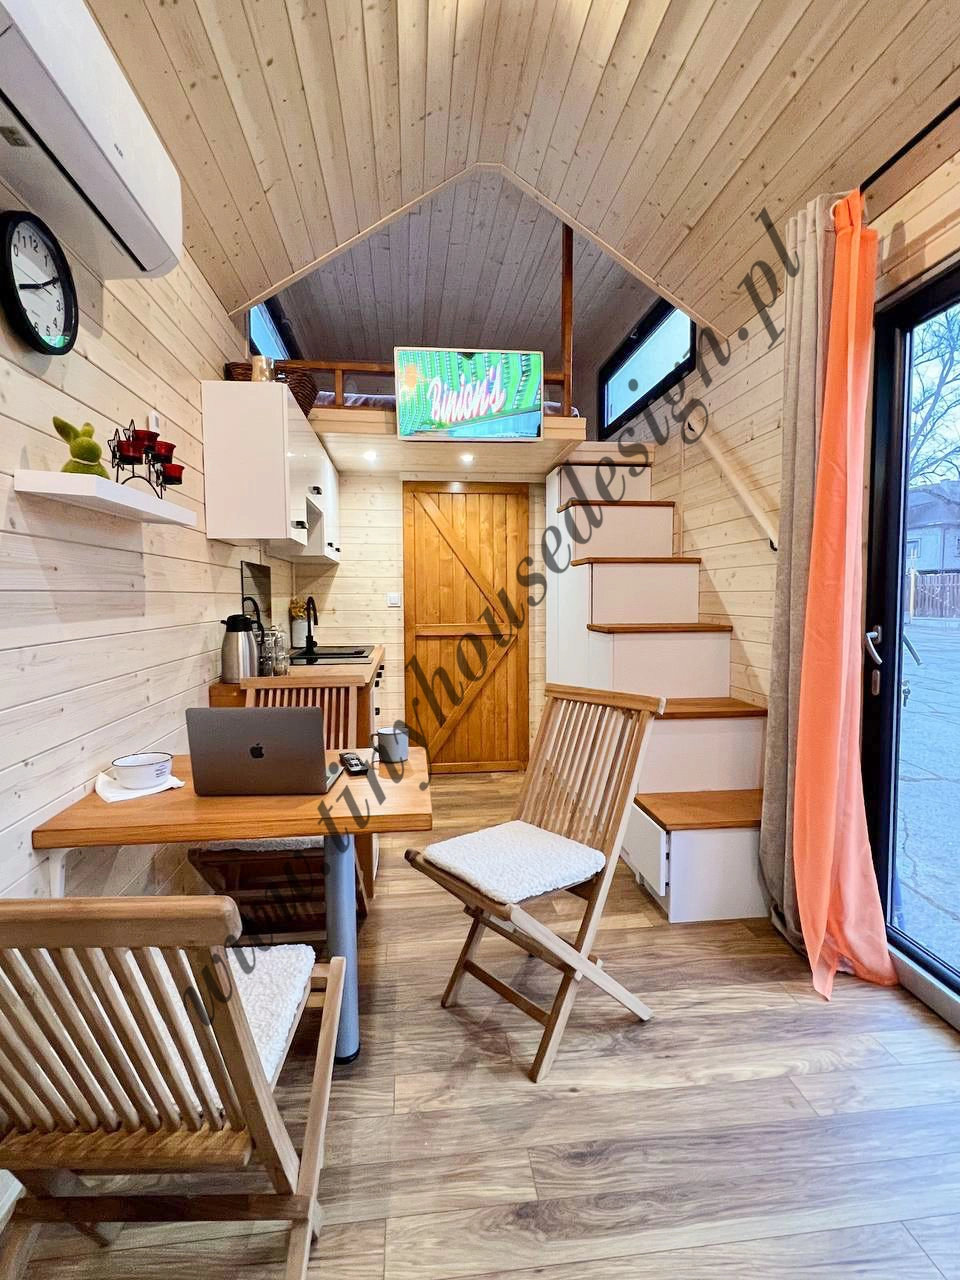 TIny house - mobilne domki - Domek Tomek - urządzone wnętrze